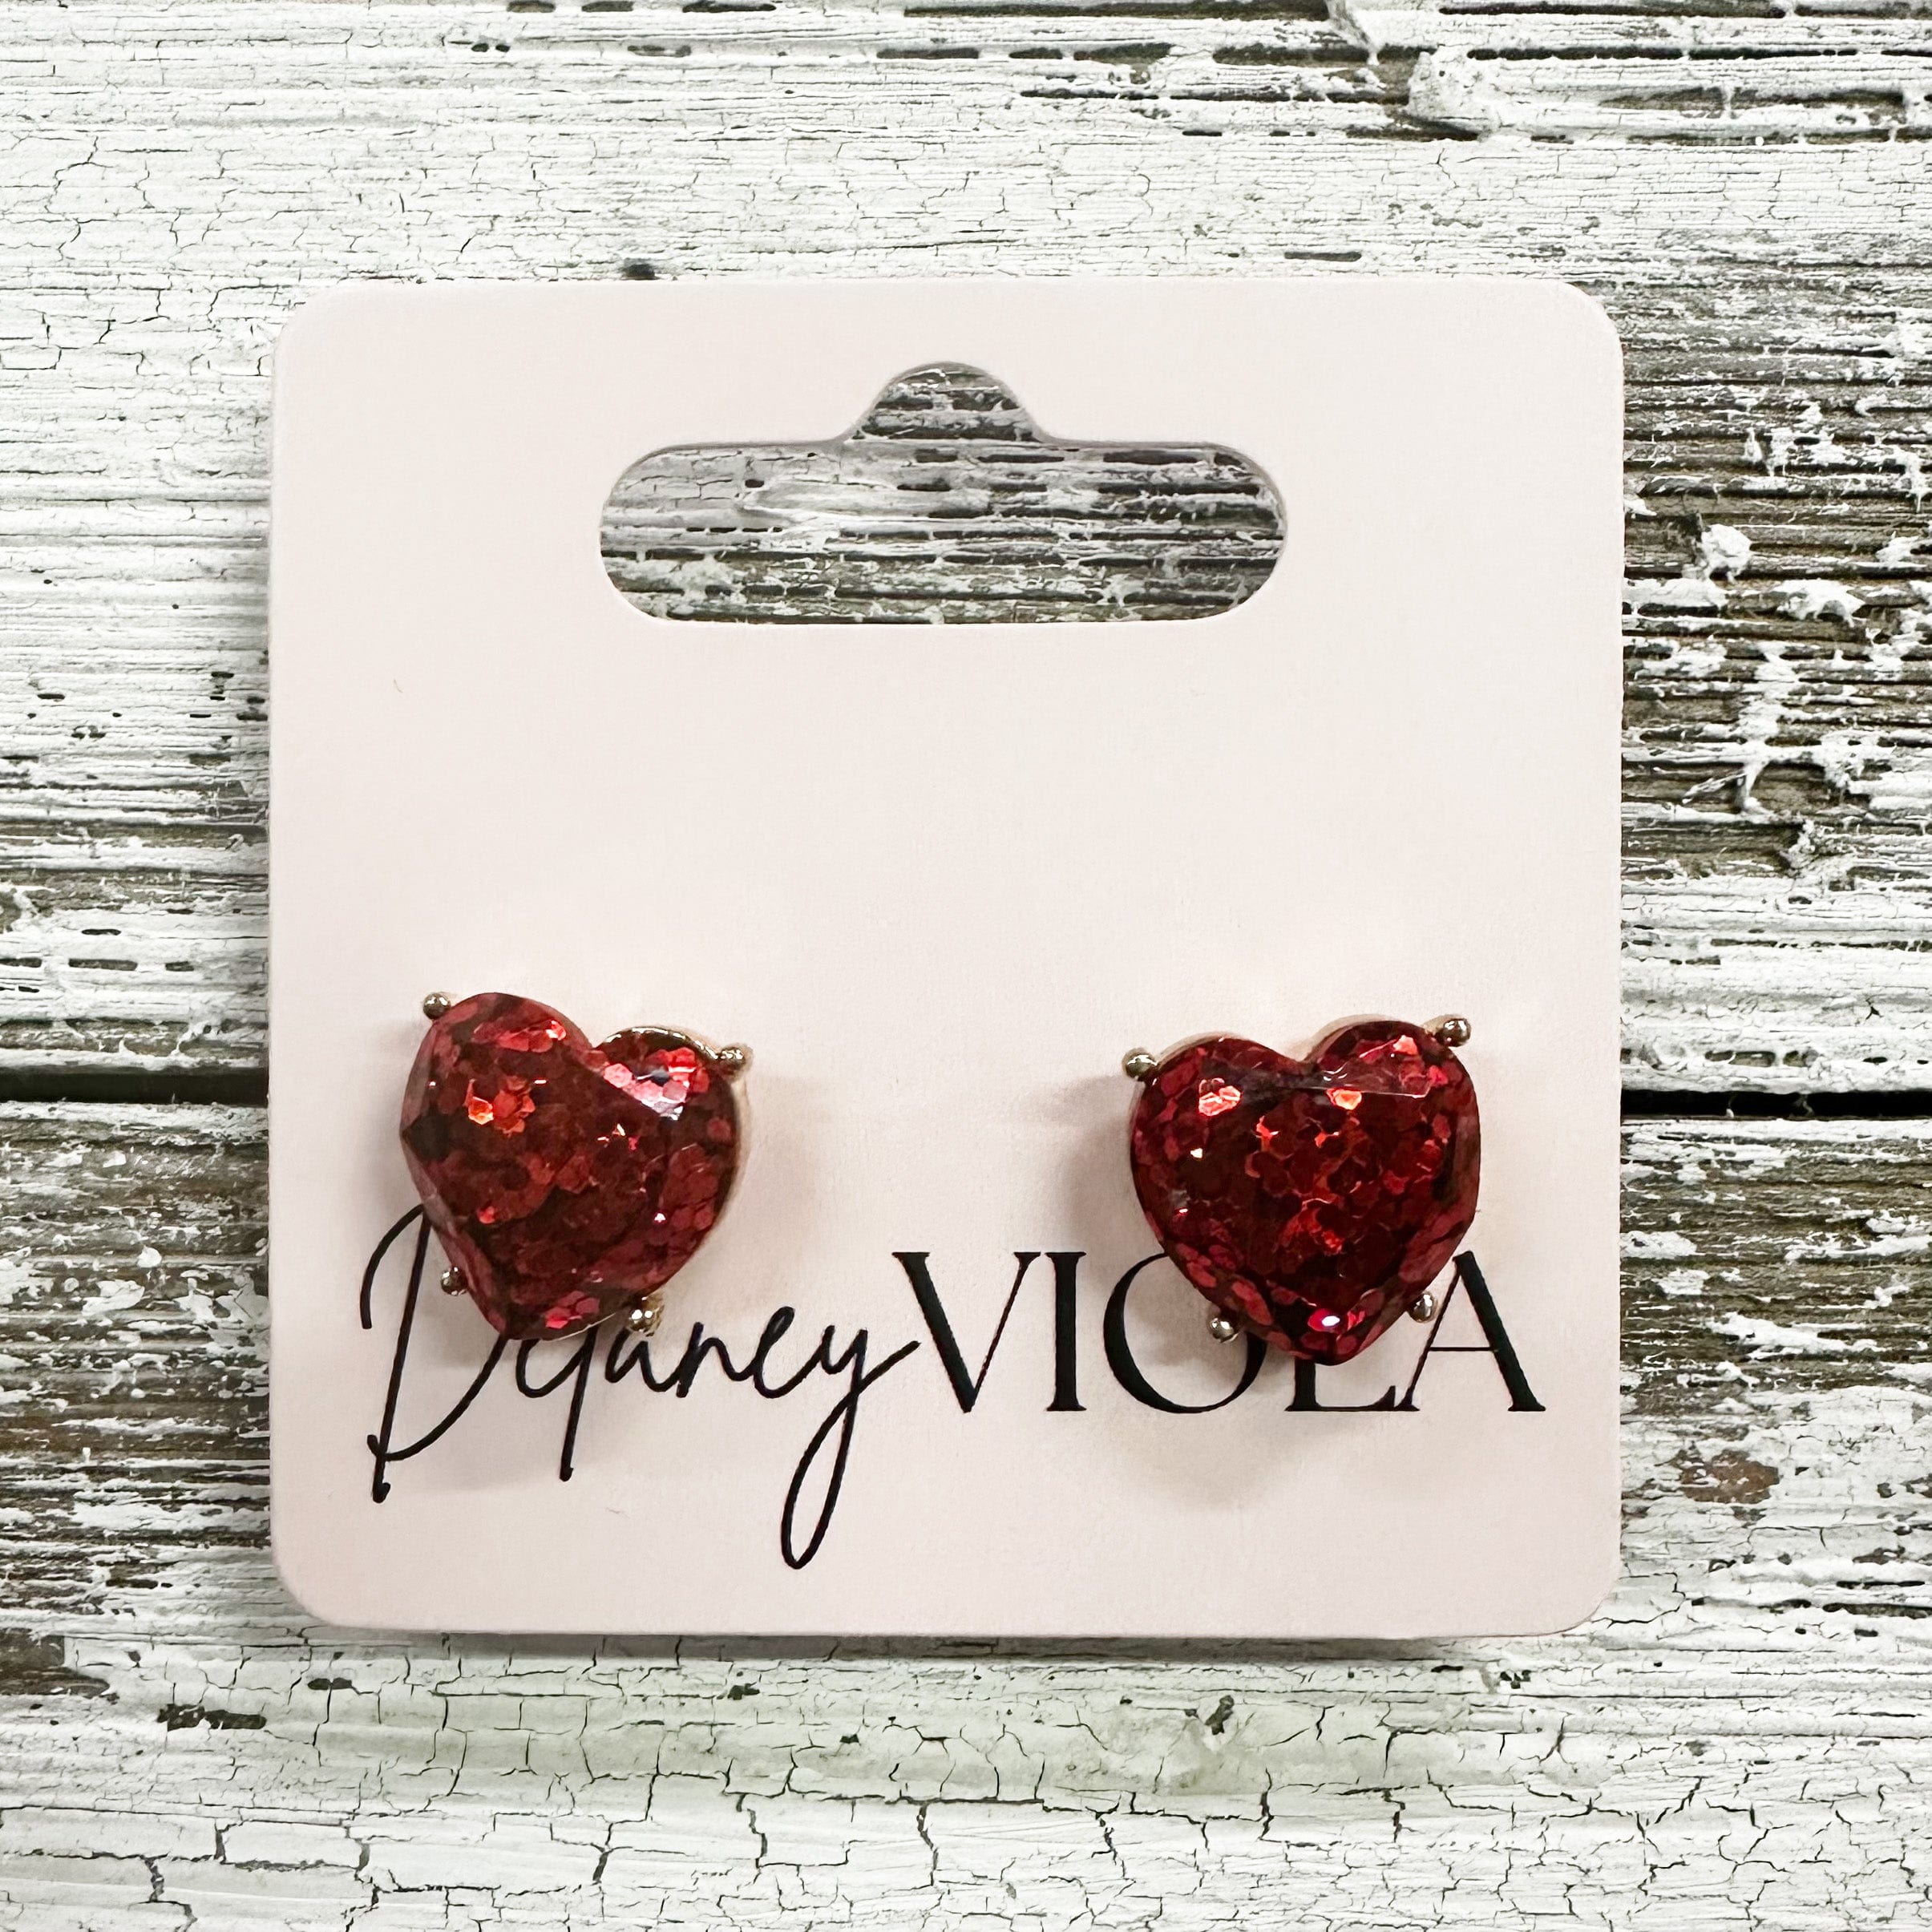 Envy Stylz Boutique Women - Accessories - Earrings Red Heart Stud Earrings